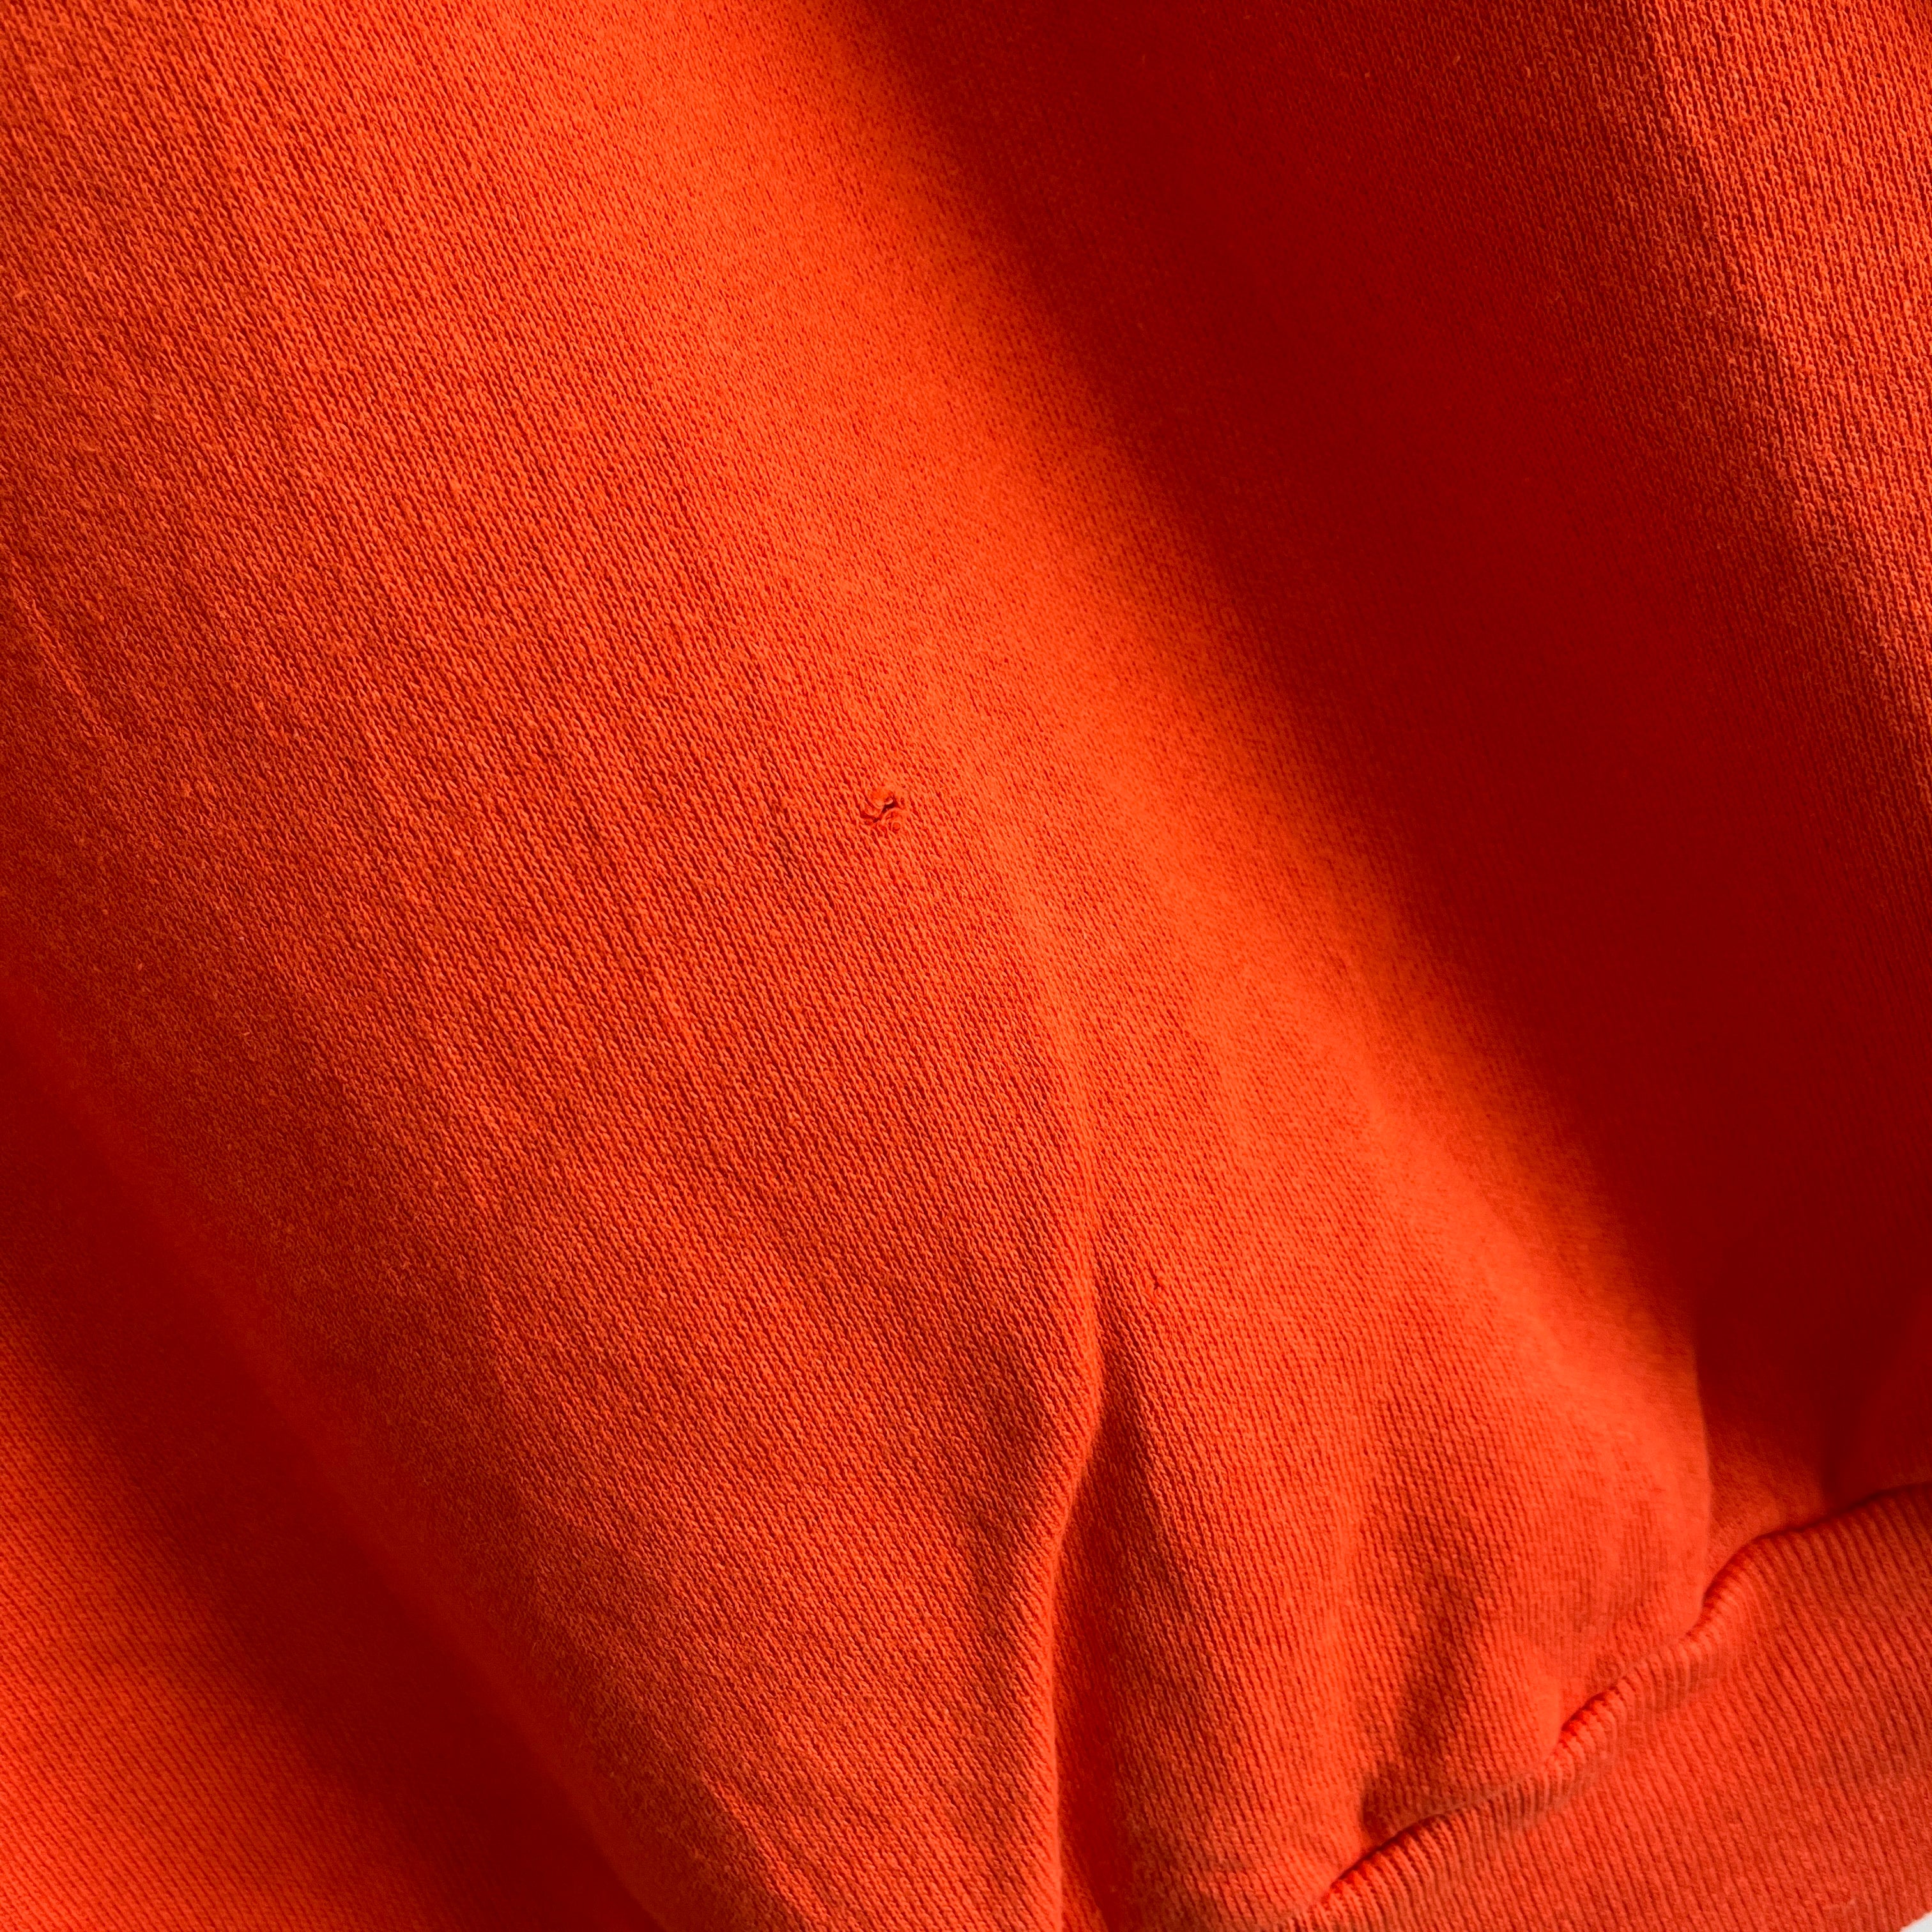 Sweat-shirt raglan orange vierge des années 1980